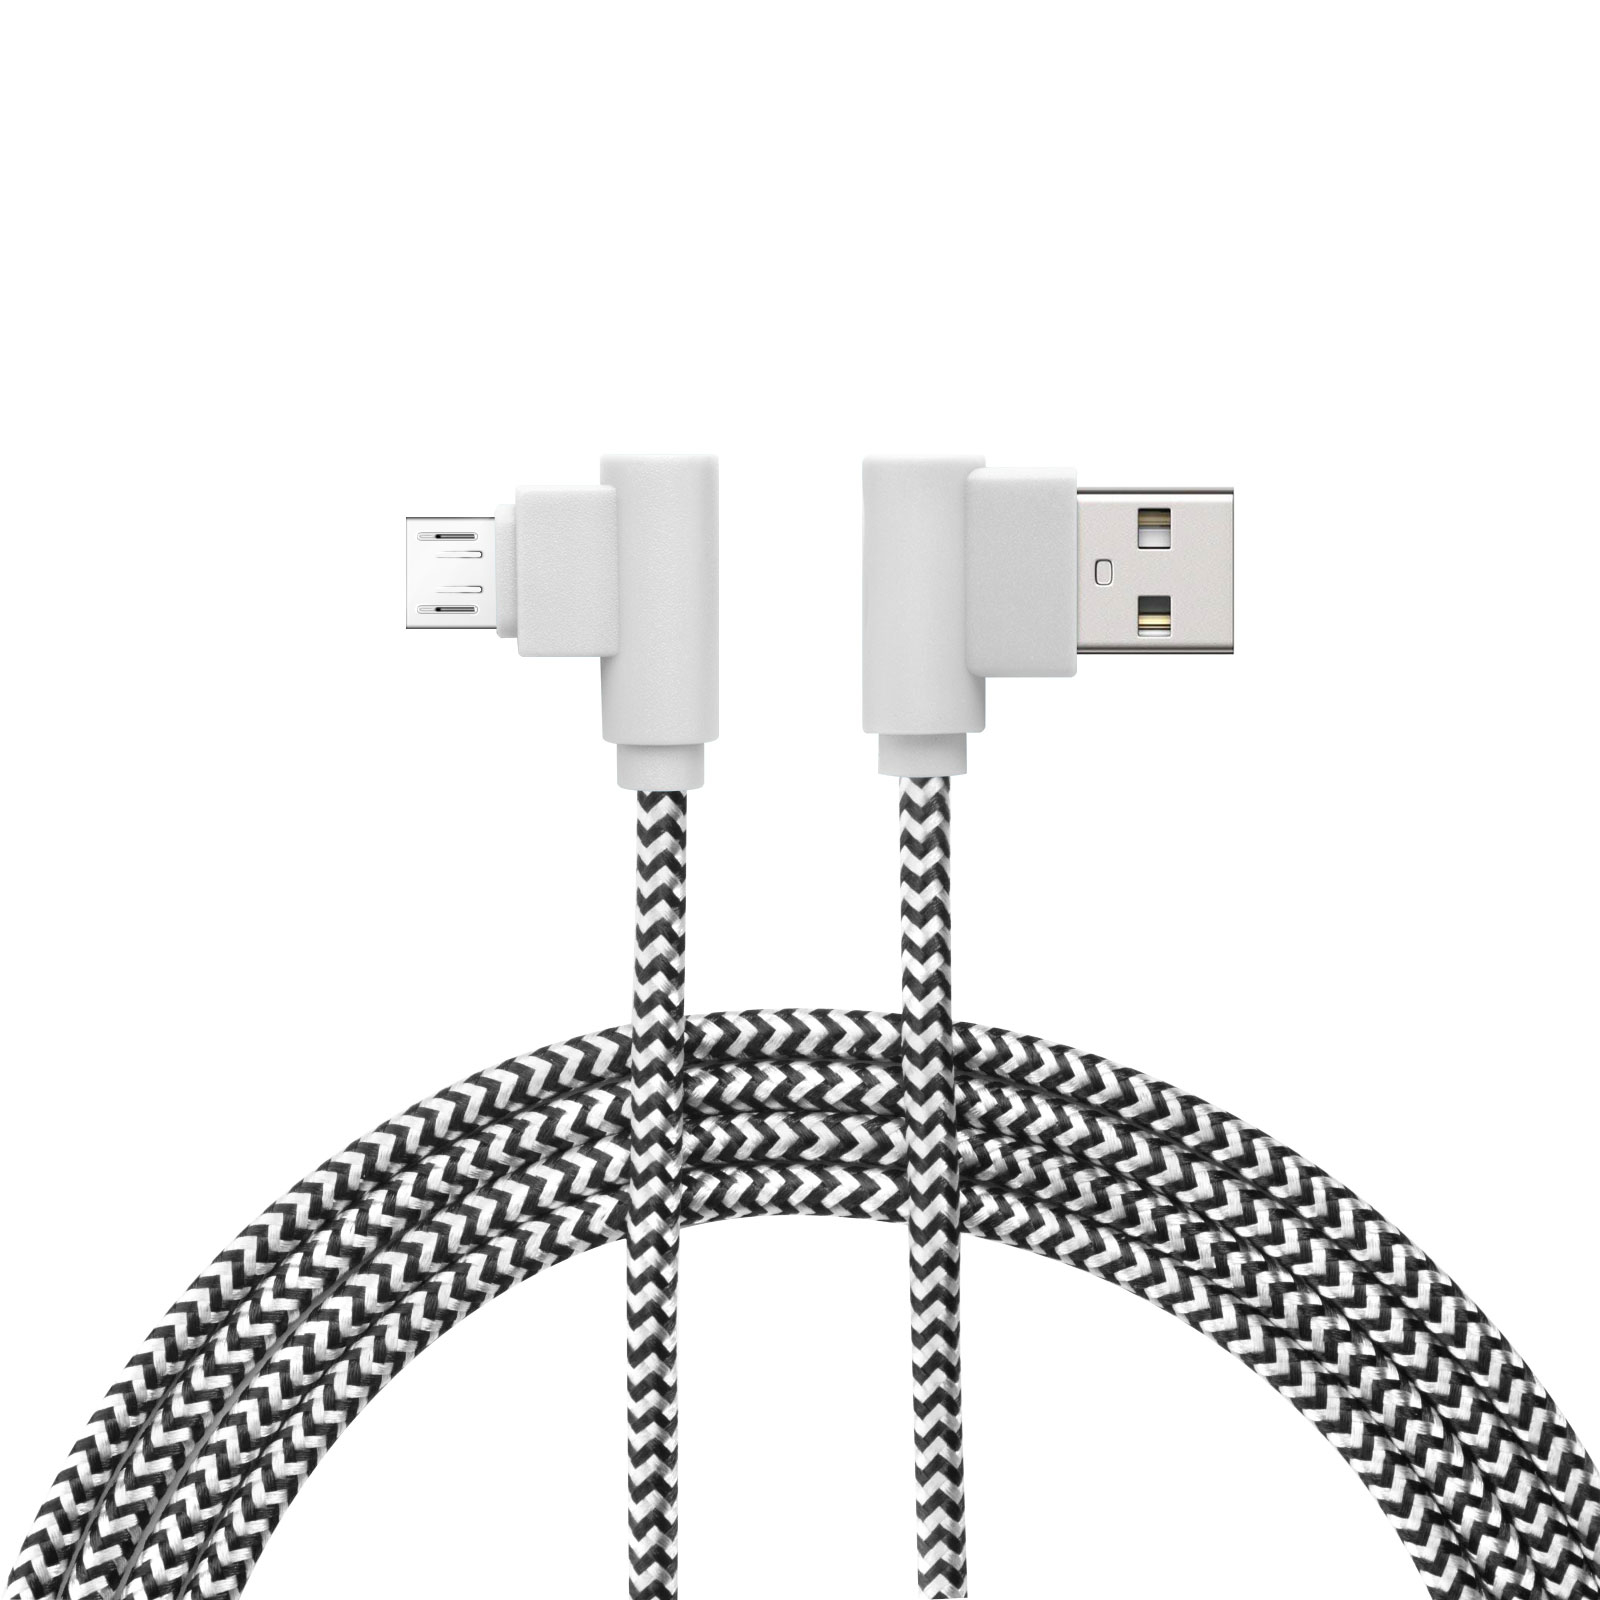 Cablu de date - Micro USB